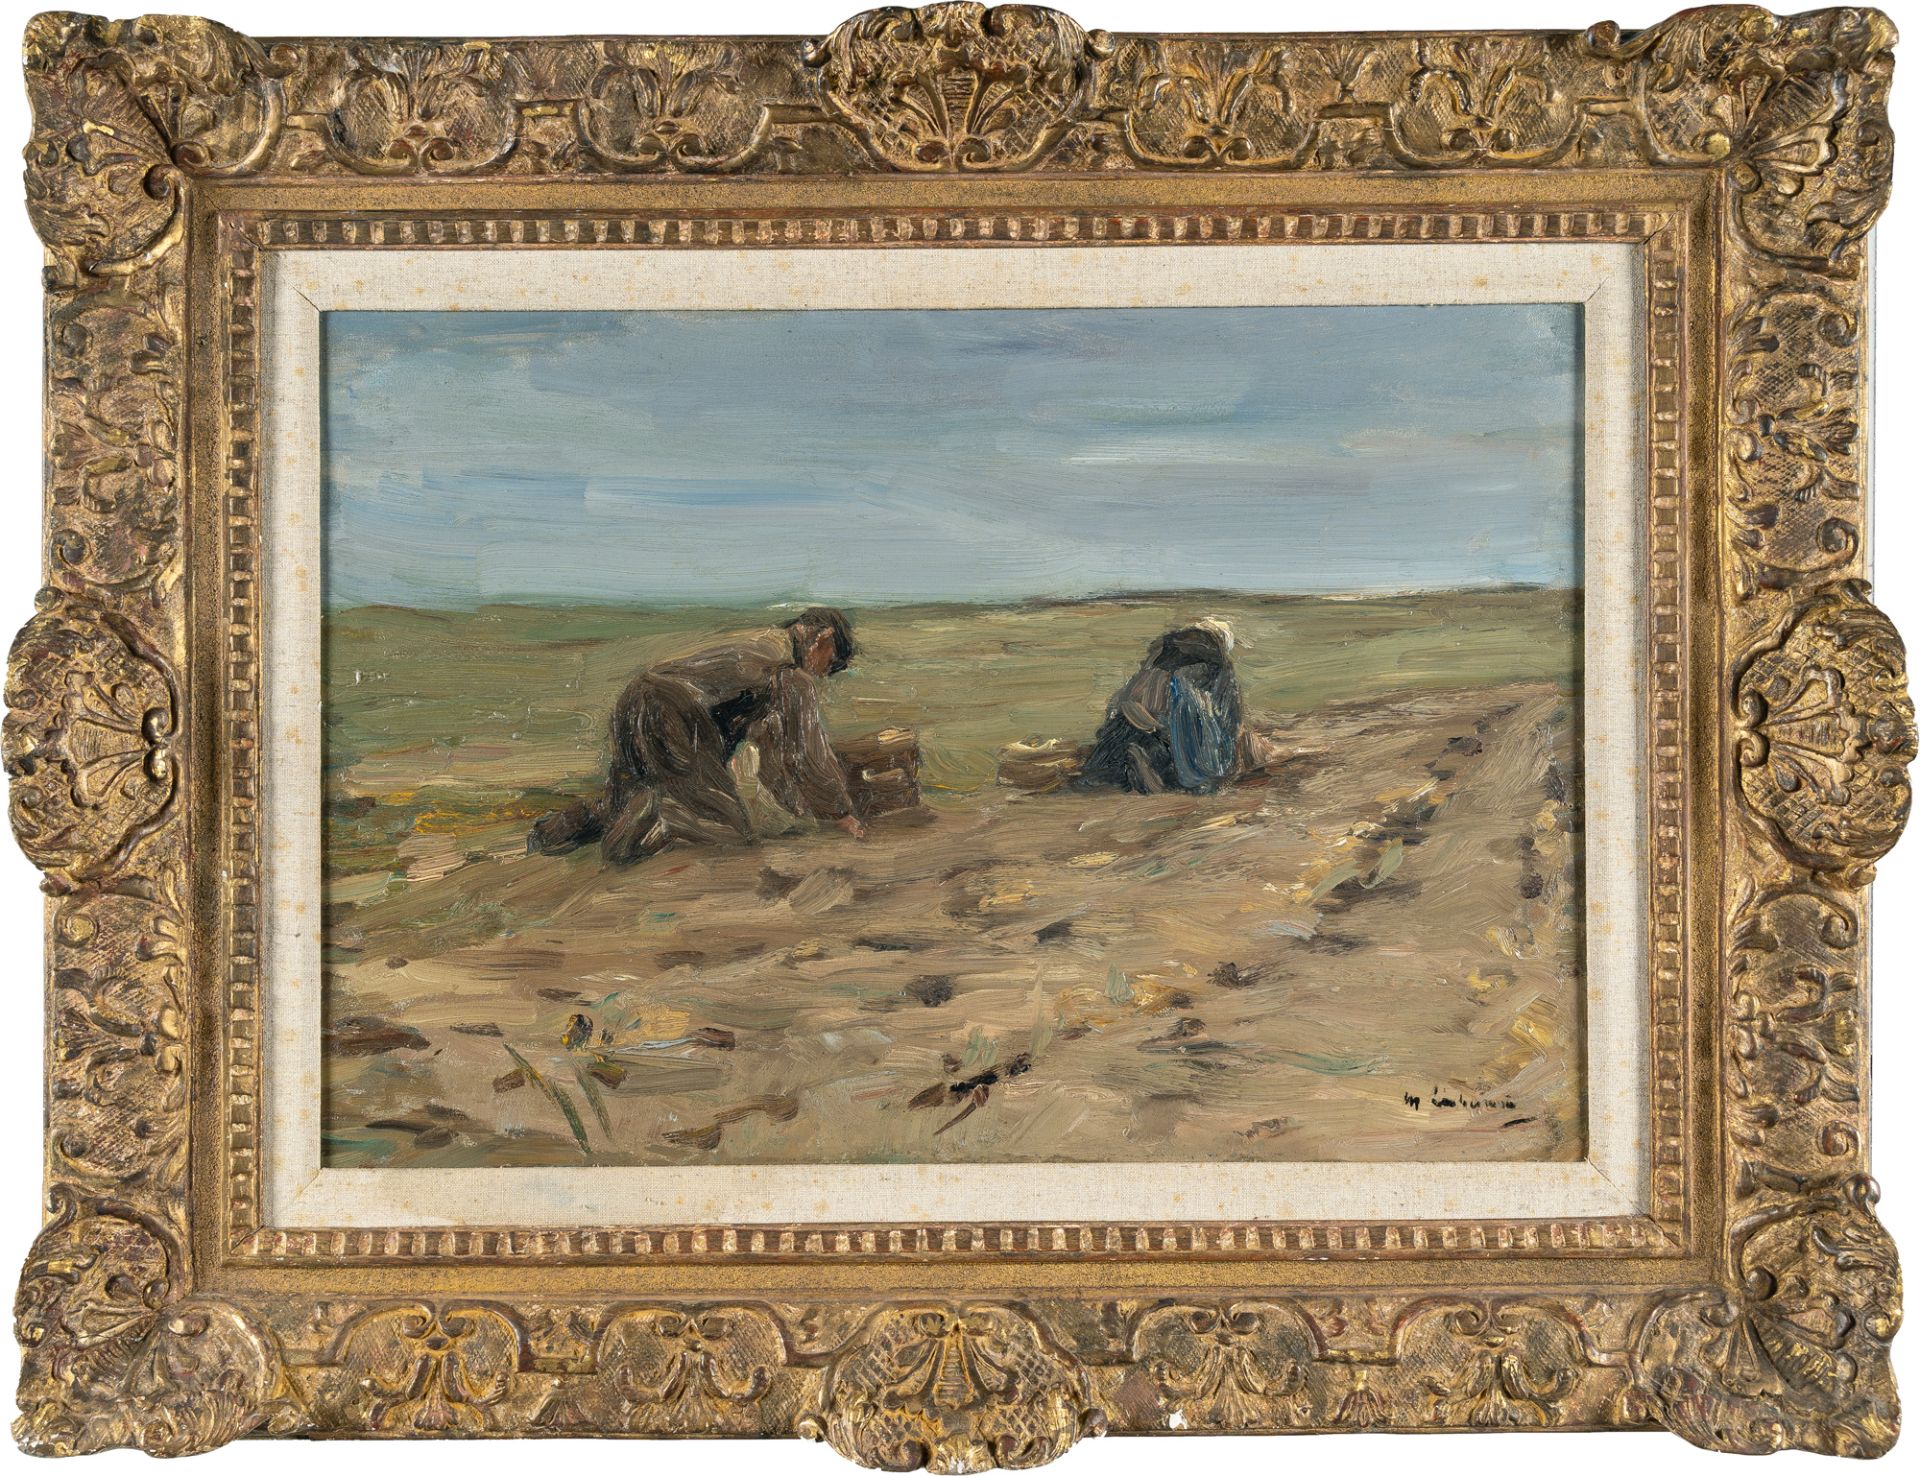 Max Liebermann (1847 - Berlin - 1935) – Kartoffelbuddler in den Dünen (Potato harvest in the dunes) - Bild 4 aus 4